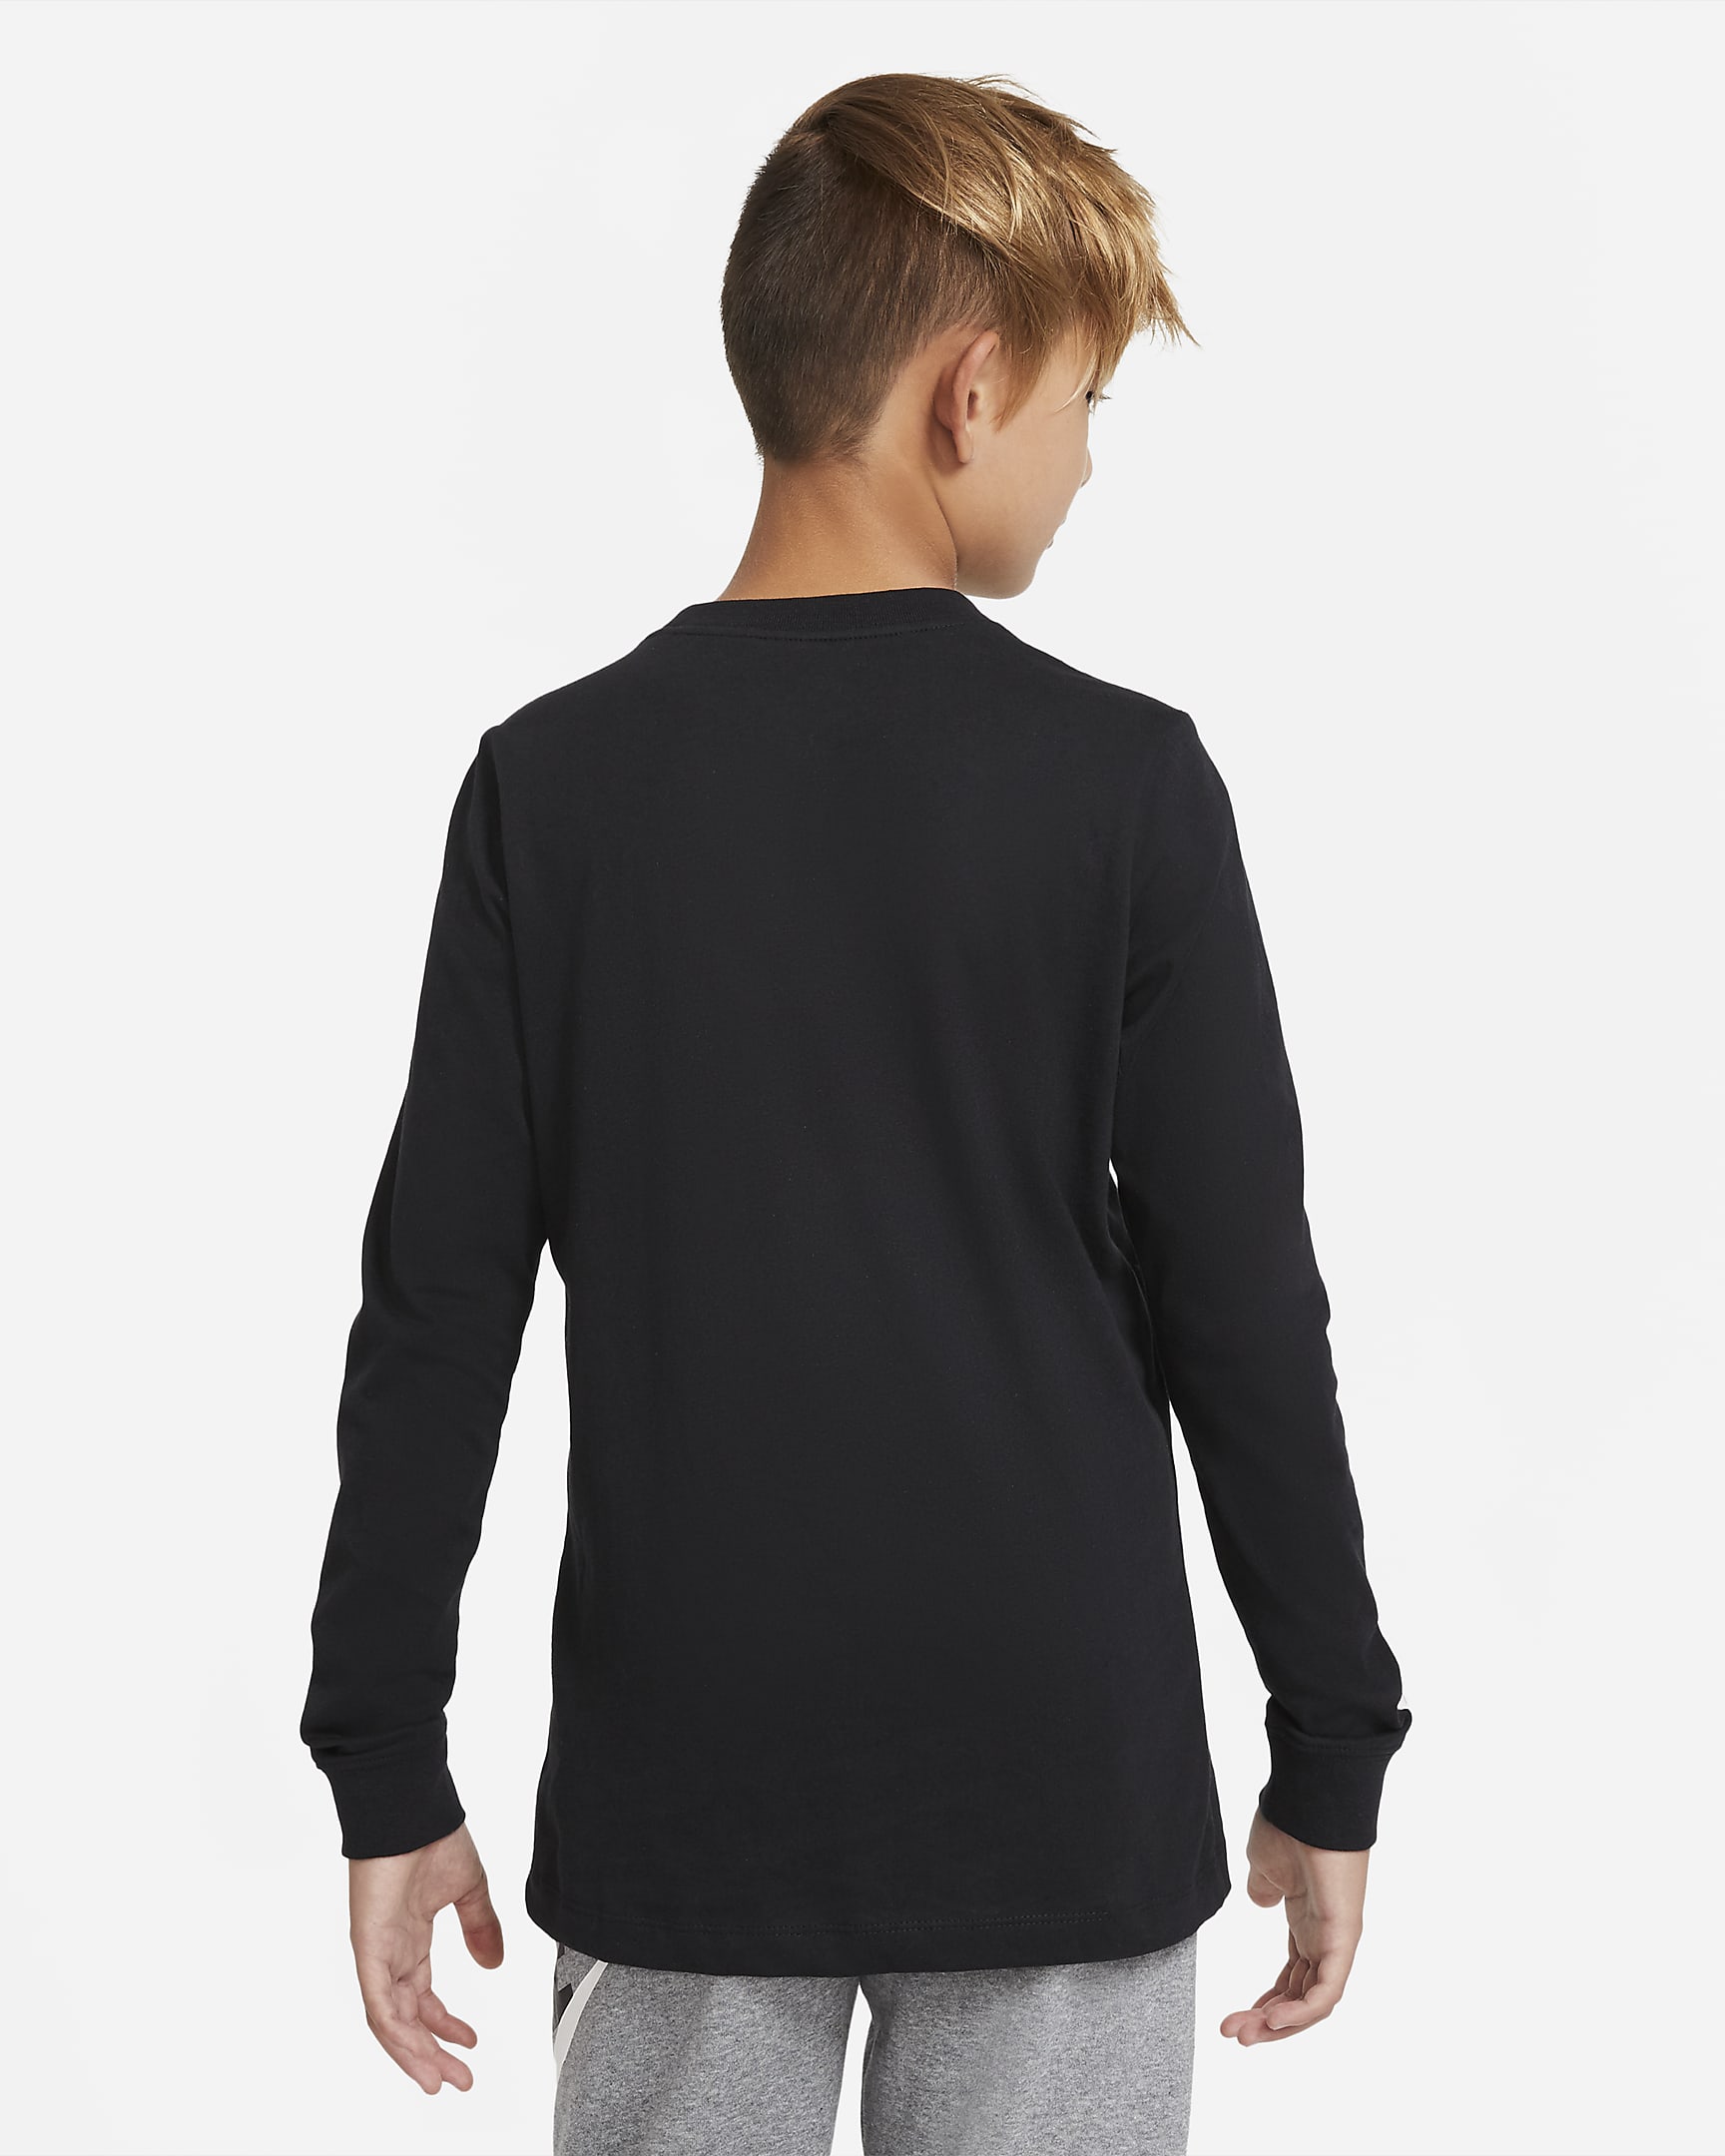 Nike Sportswear Older Kids' (Boys') Long-Sleeve T-Shirt. Nike UK